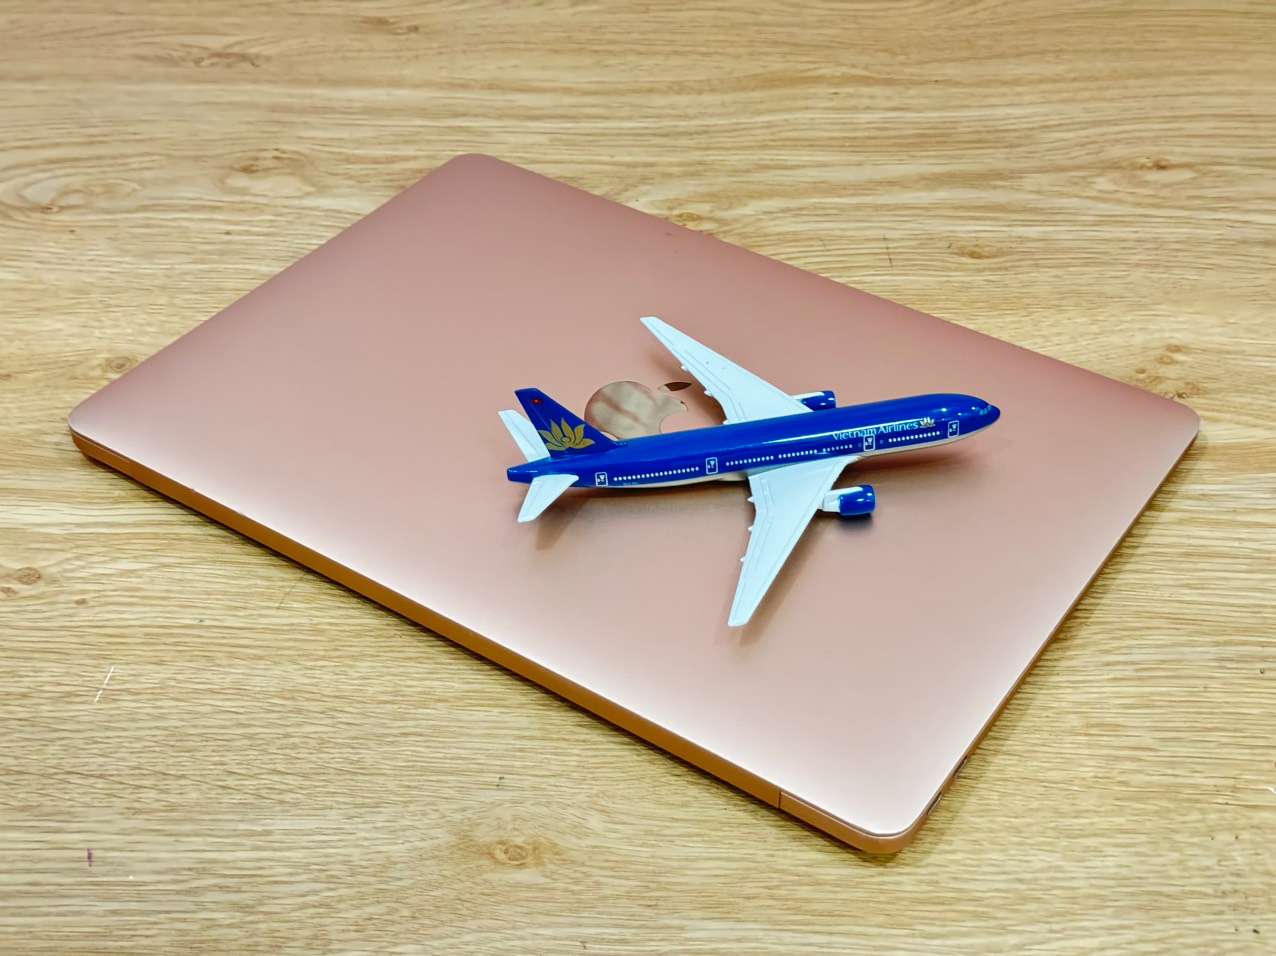 Macbook-air-2019-core-i5-ram-16gb-ssd-256gb-gold-laptop-doanh-nhan-laptopthienan